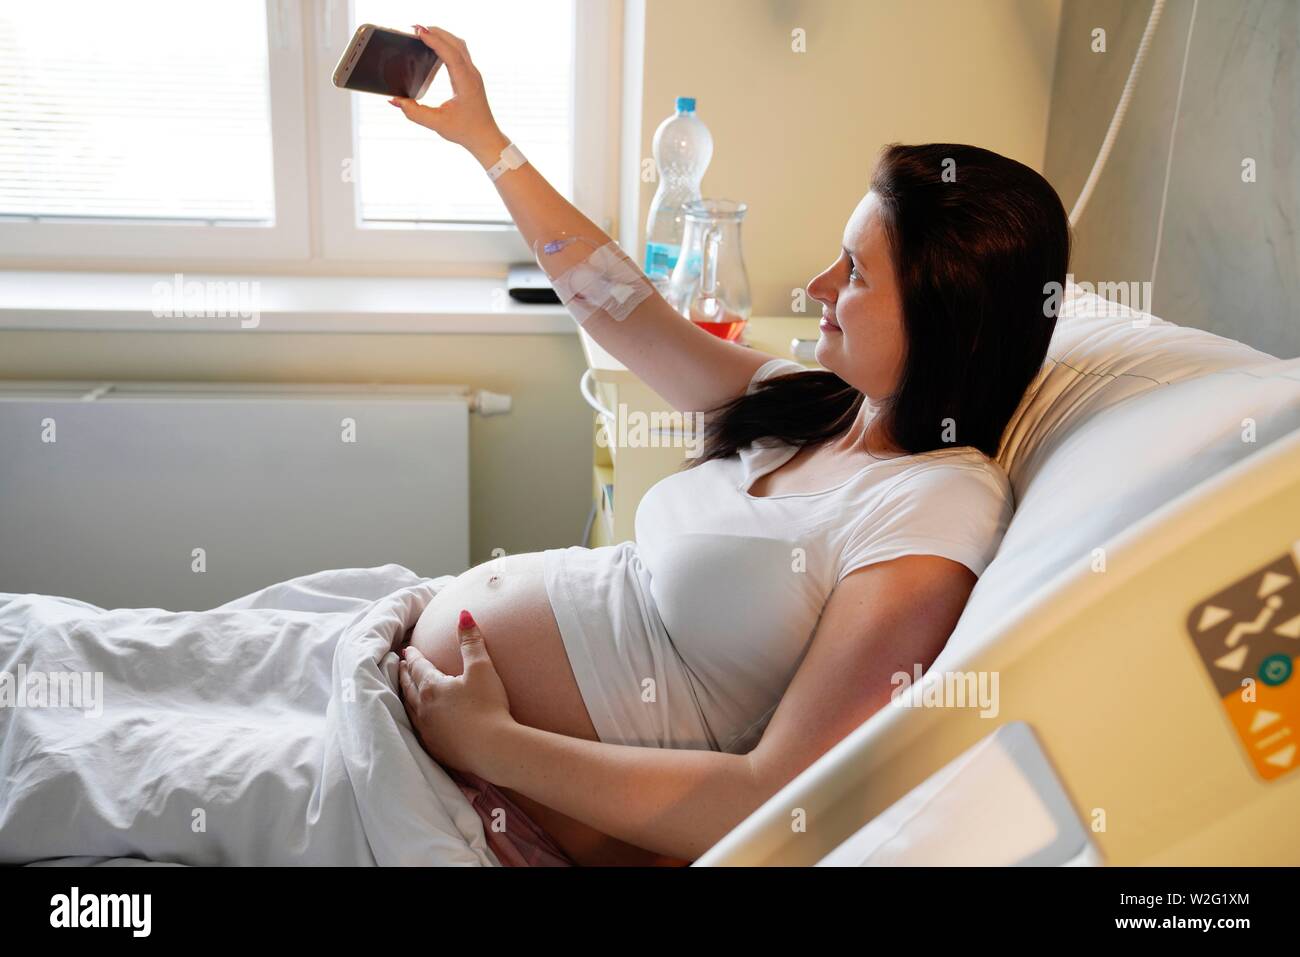 Rischio di gravidanza, donna incinta in ospedale e facendo Selfie, Karlovy Vary, Repubblica Ceca Foto Stock